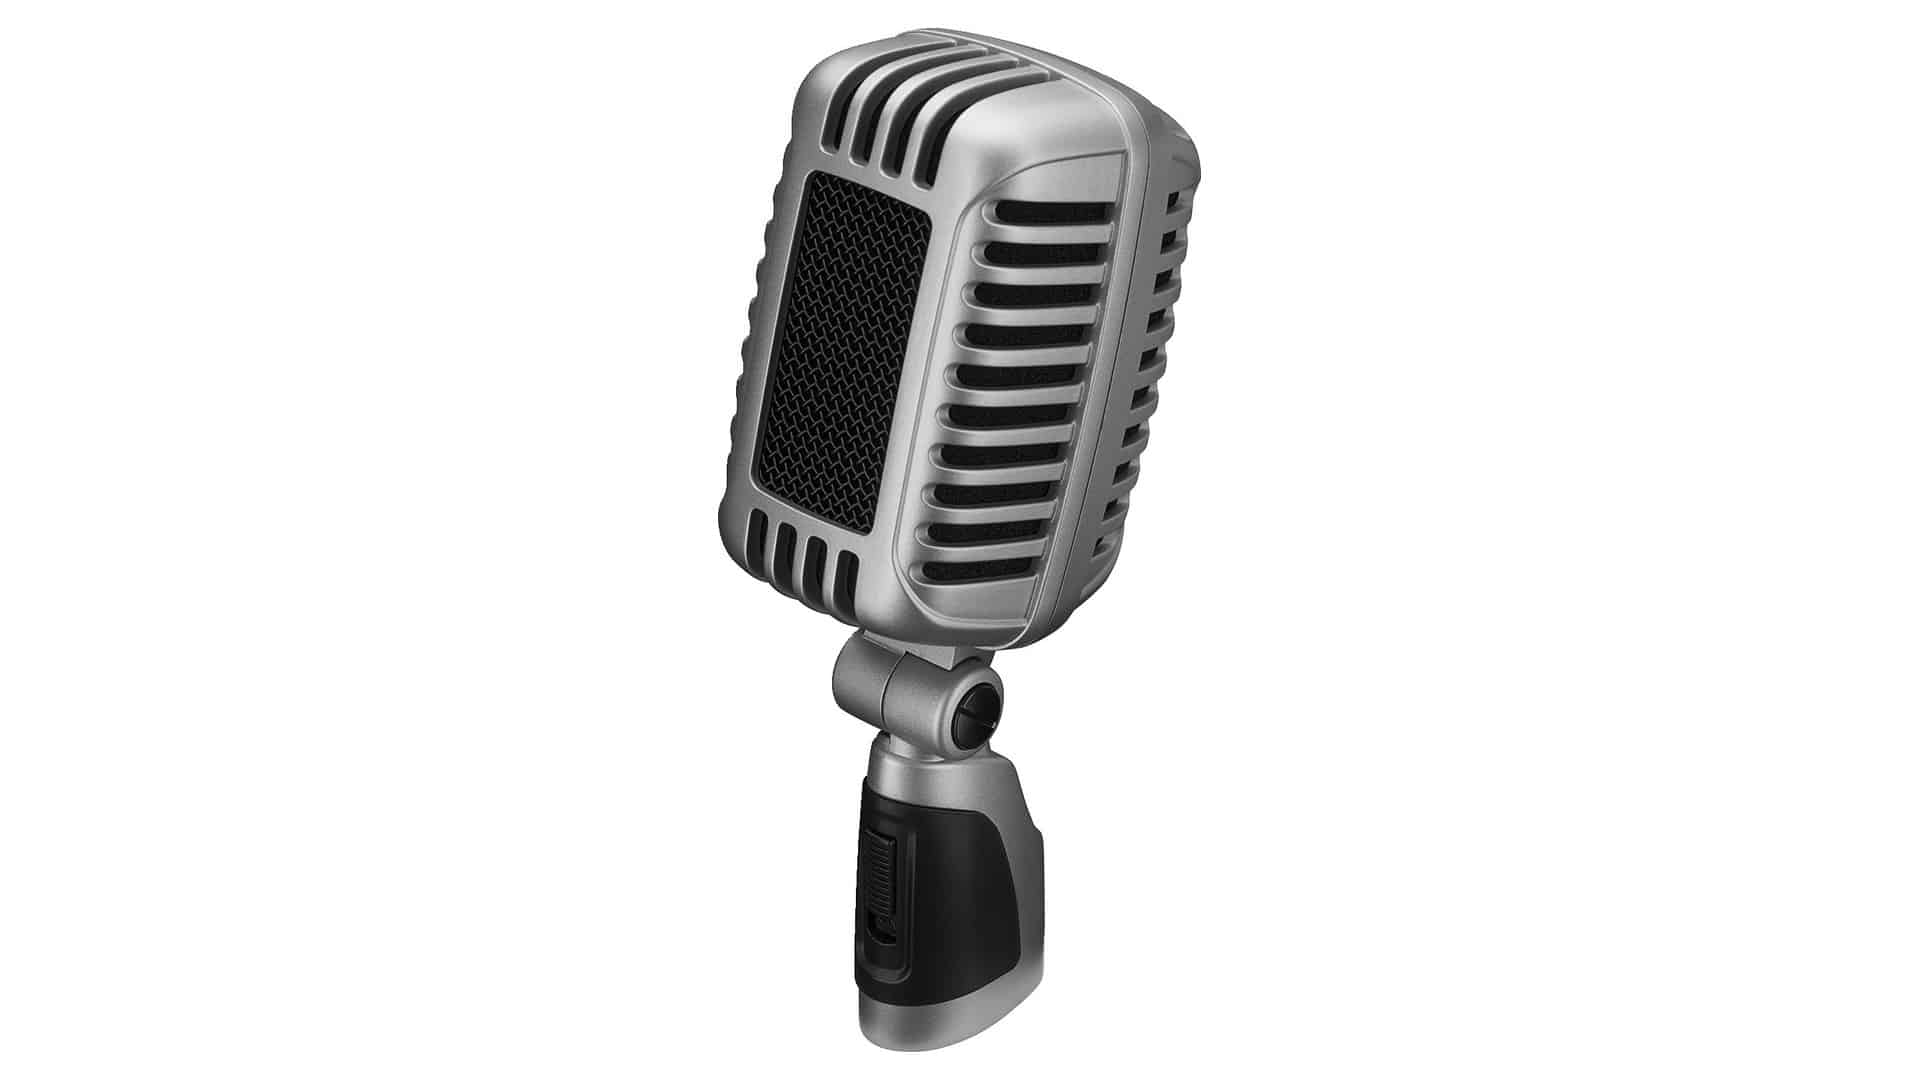 in Schwarz IMG STAGELINE DM-7 dynamisches Mikrofon für Bühne und Gesang Sprach-Verstärker mit Supernieren-Charakteristik inklusive Mikrofon-Halter Adapter-Schraube und Mikrofon-Tasche